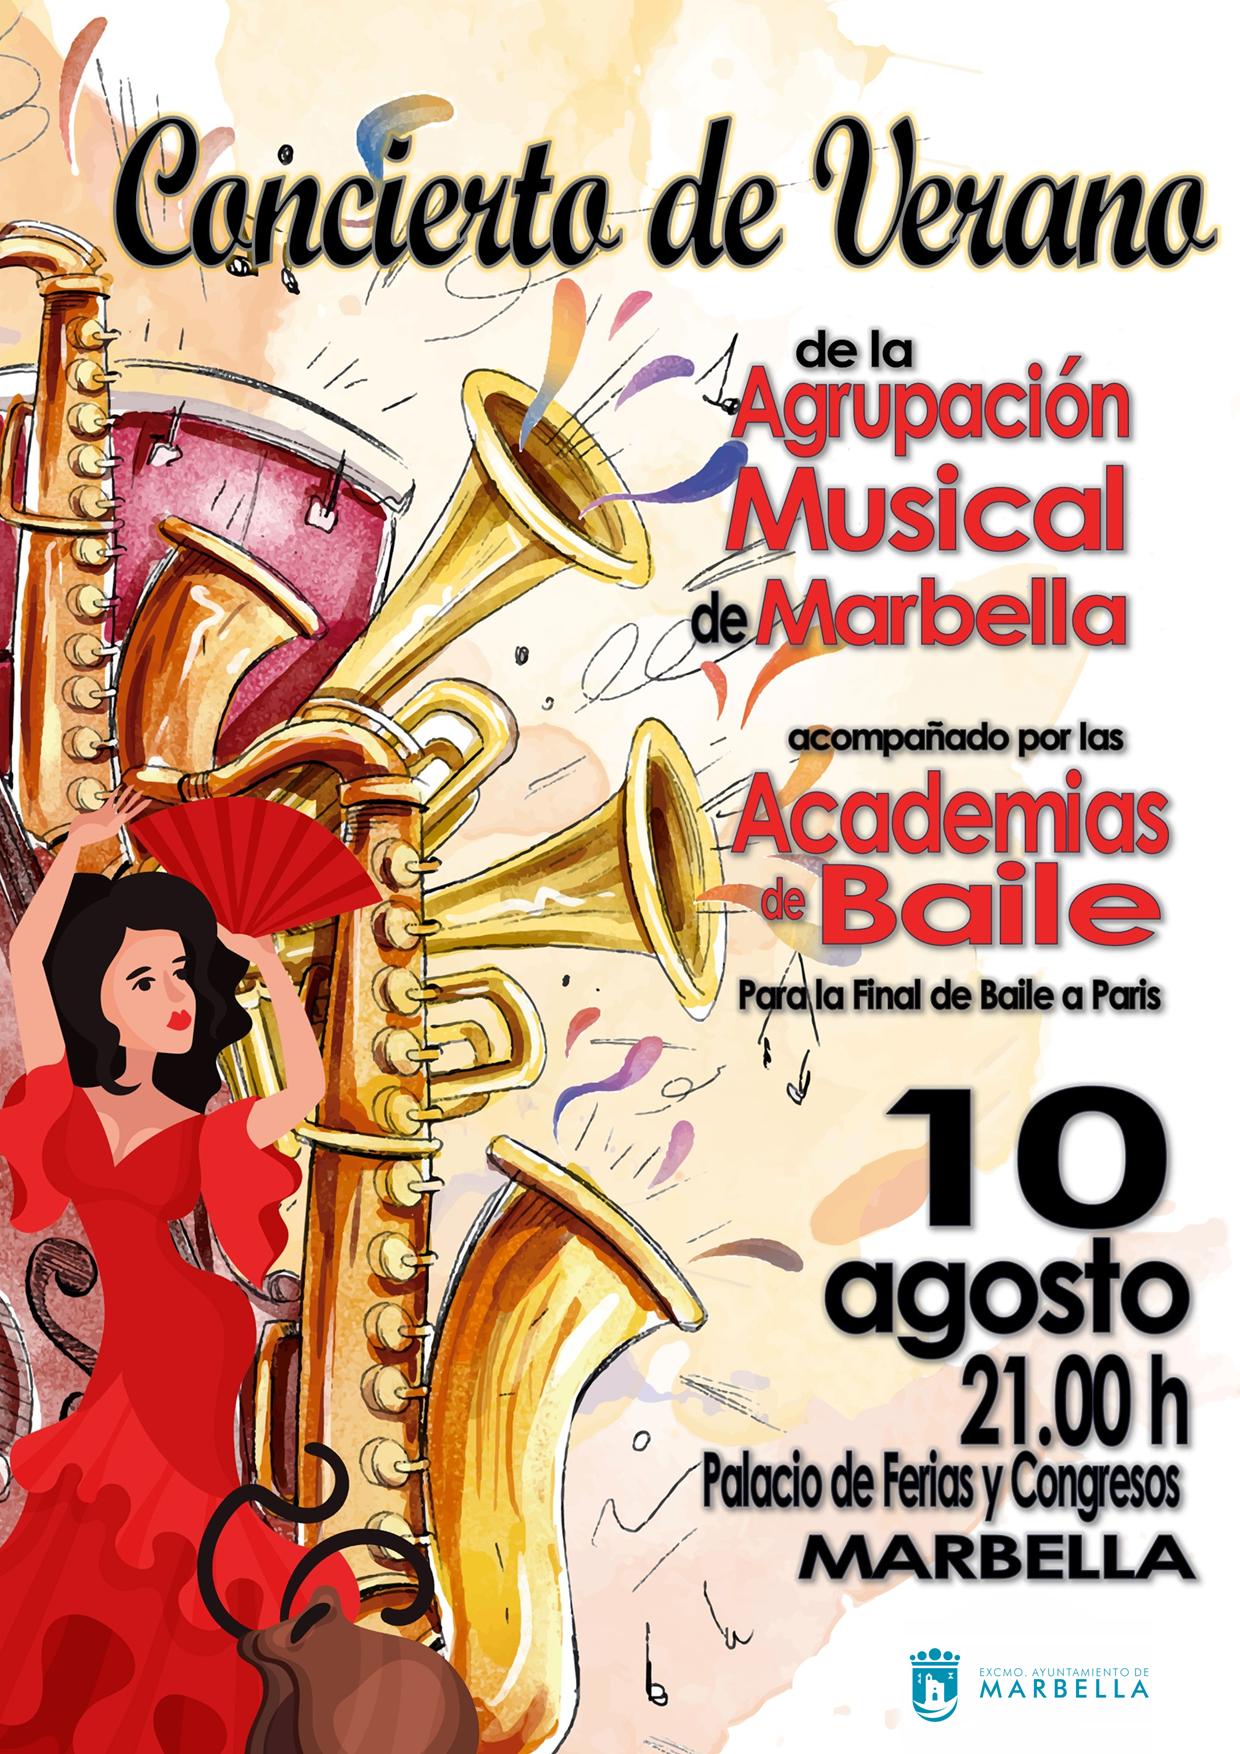 La Agrupación Musical de Marbella ofrecerá un concierto de verano a favor de las academias de baile que participarán en París en la final del concurso ‘Vive tu sueño’